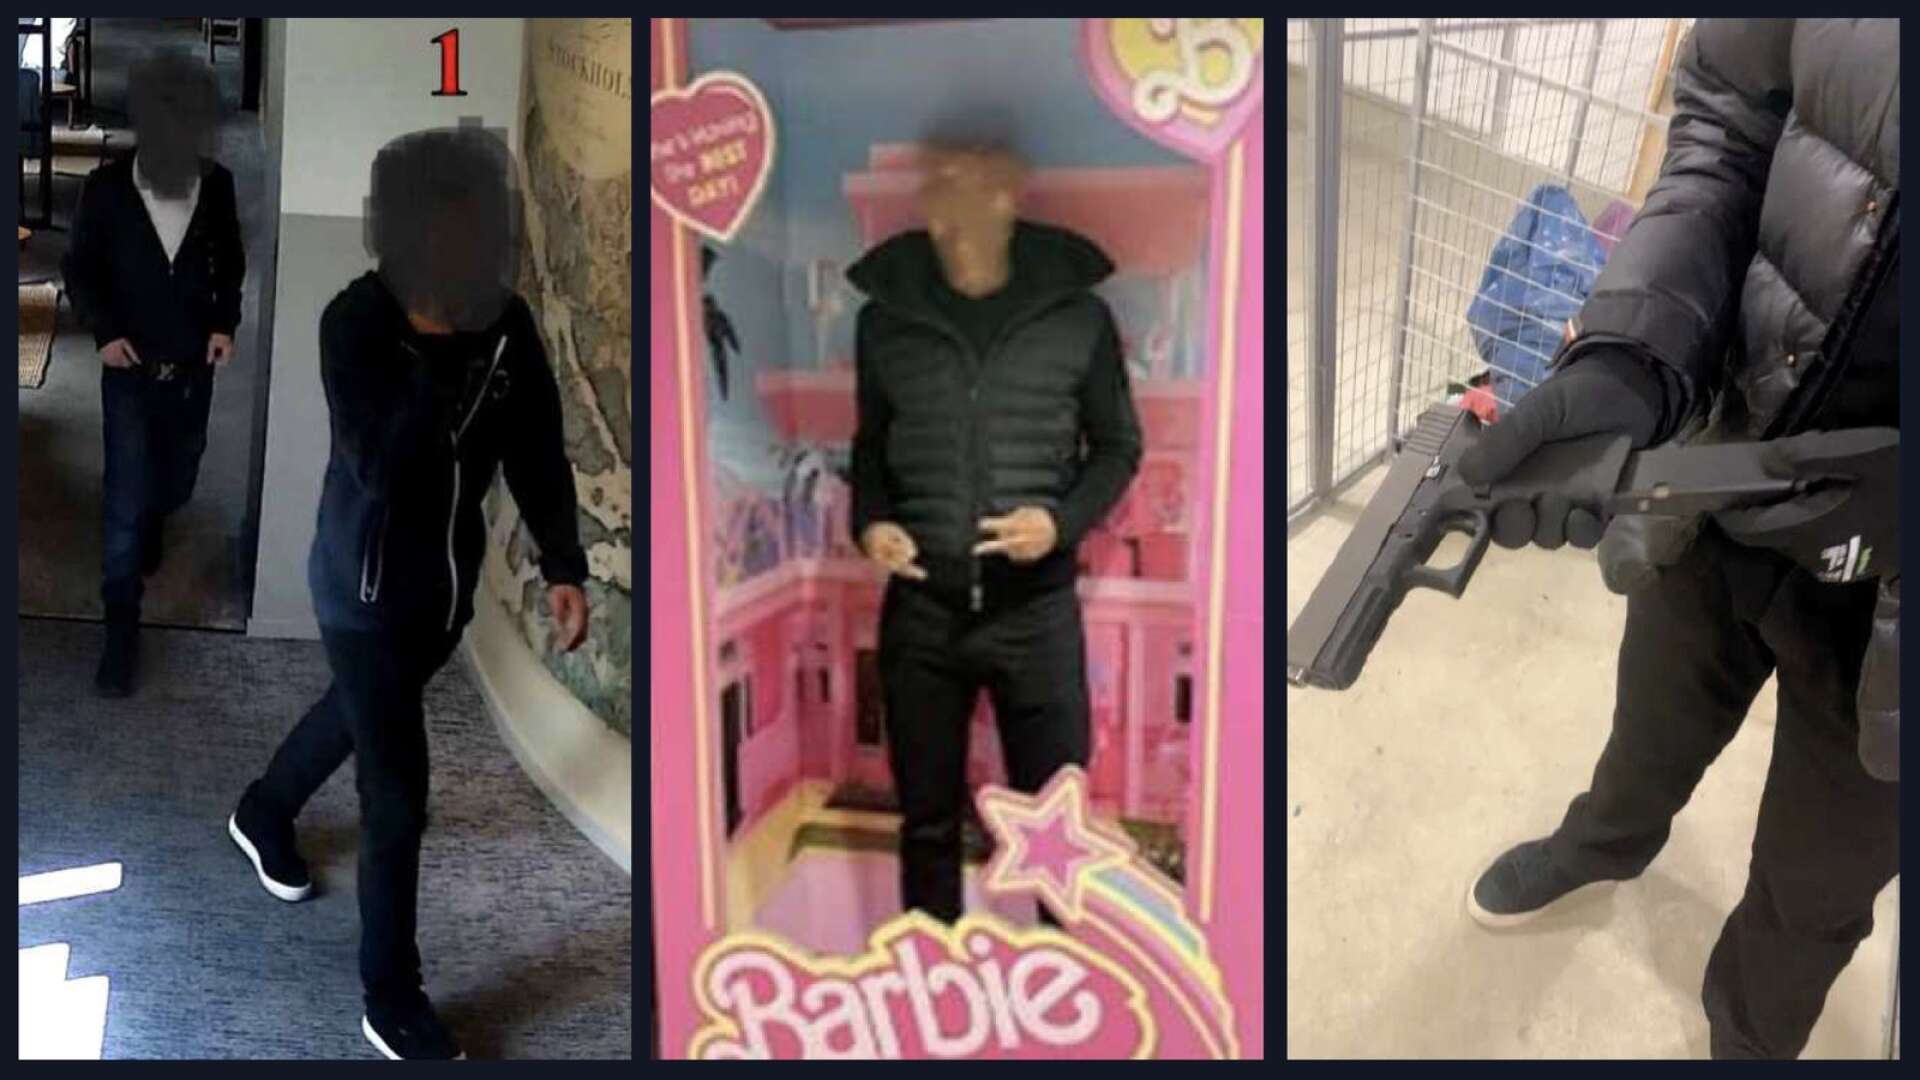 Gick på Barbiefilm dagar efter mordet • Brand i Degerfors startskottet?